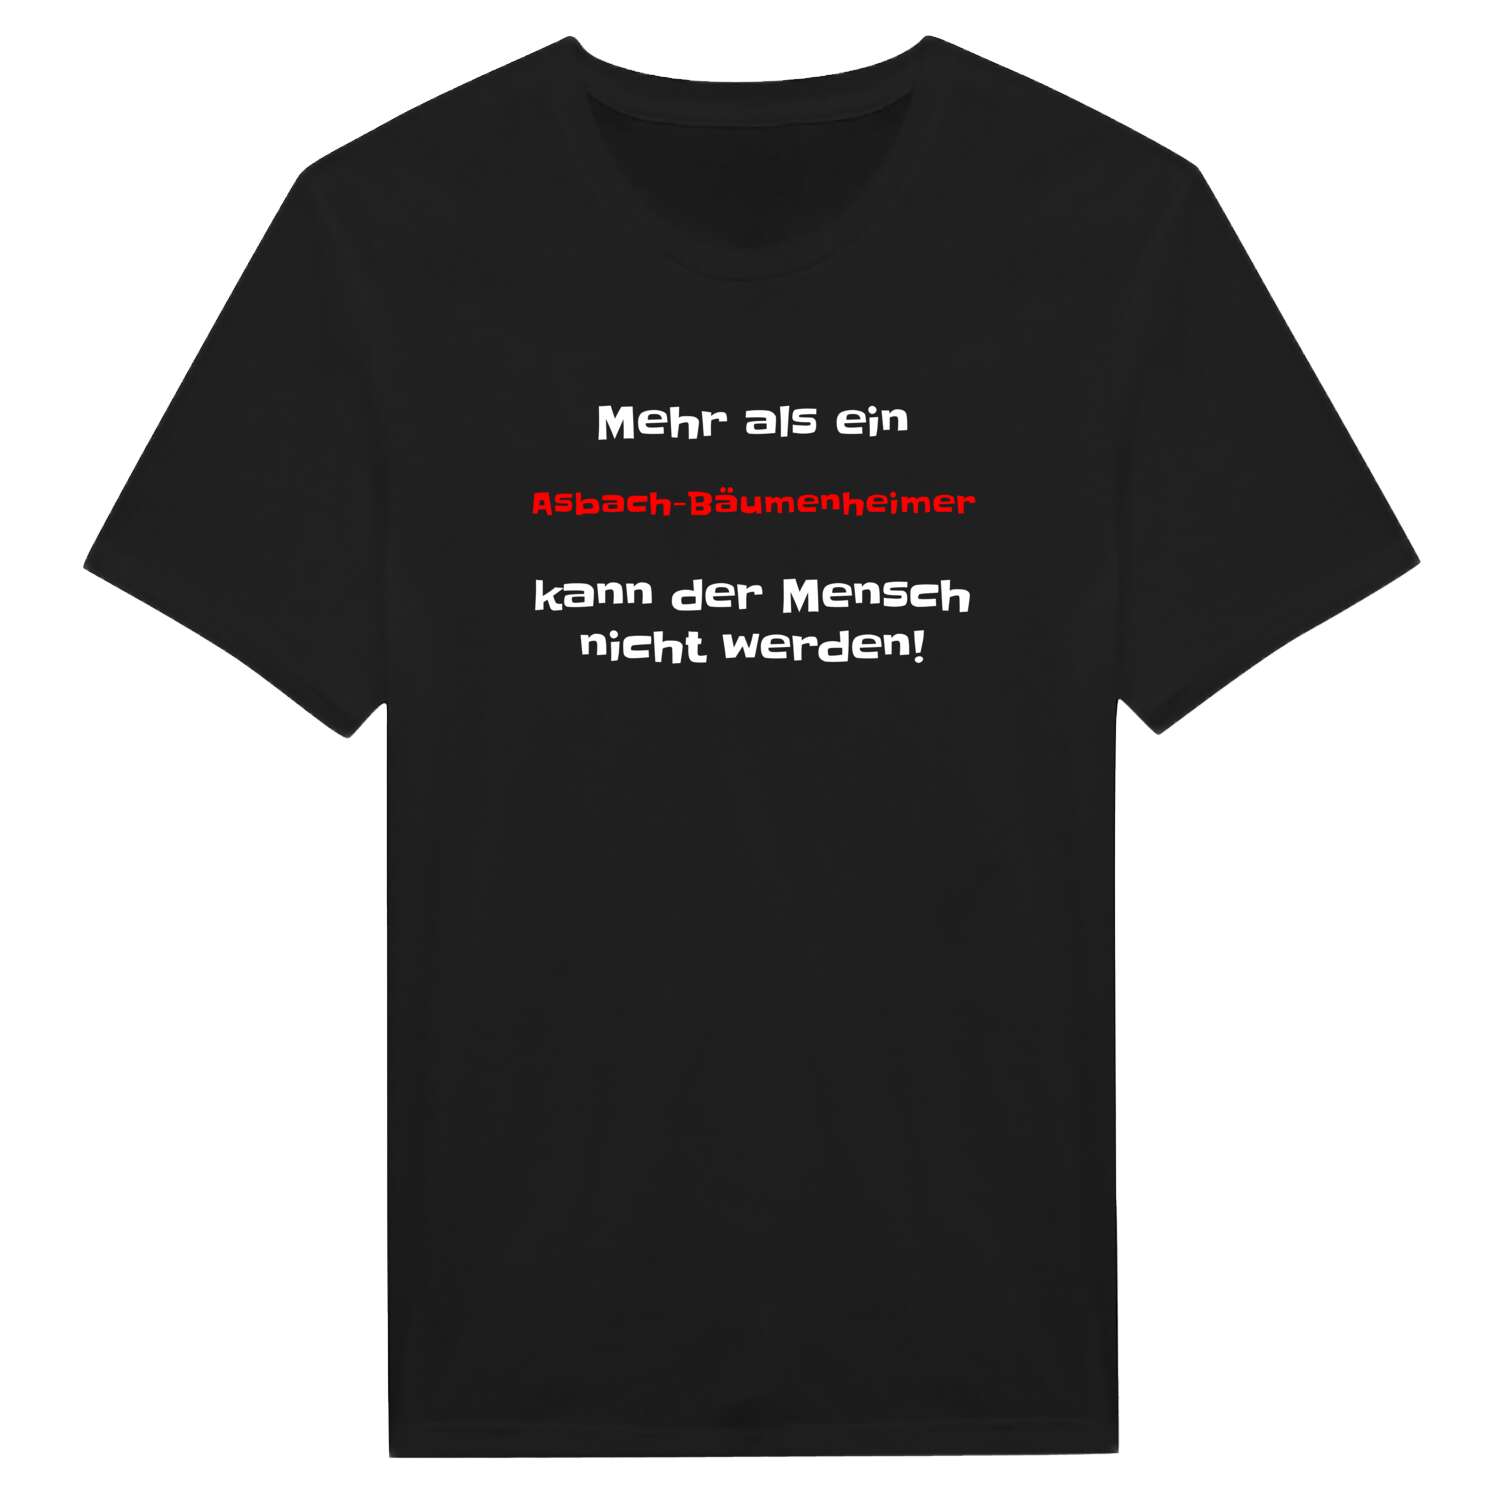 Asbach-Bäumenheim T-Shirt »Mehr als ein«